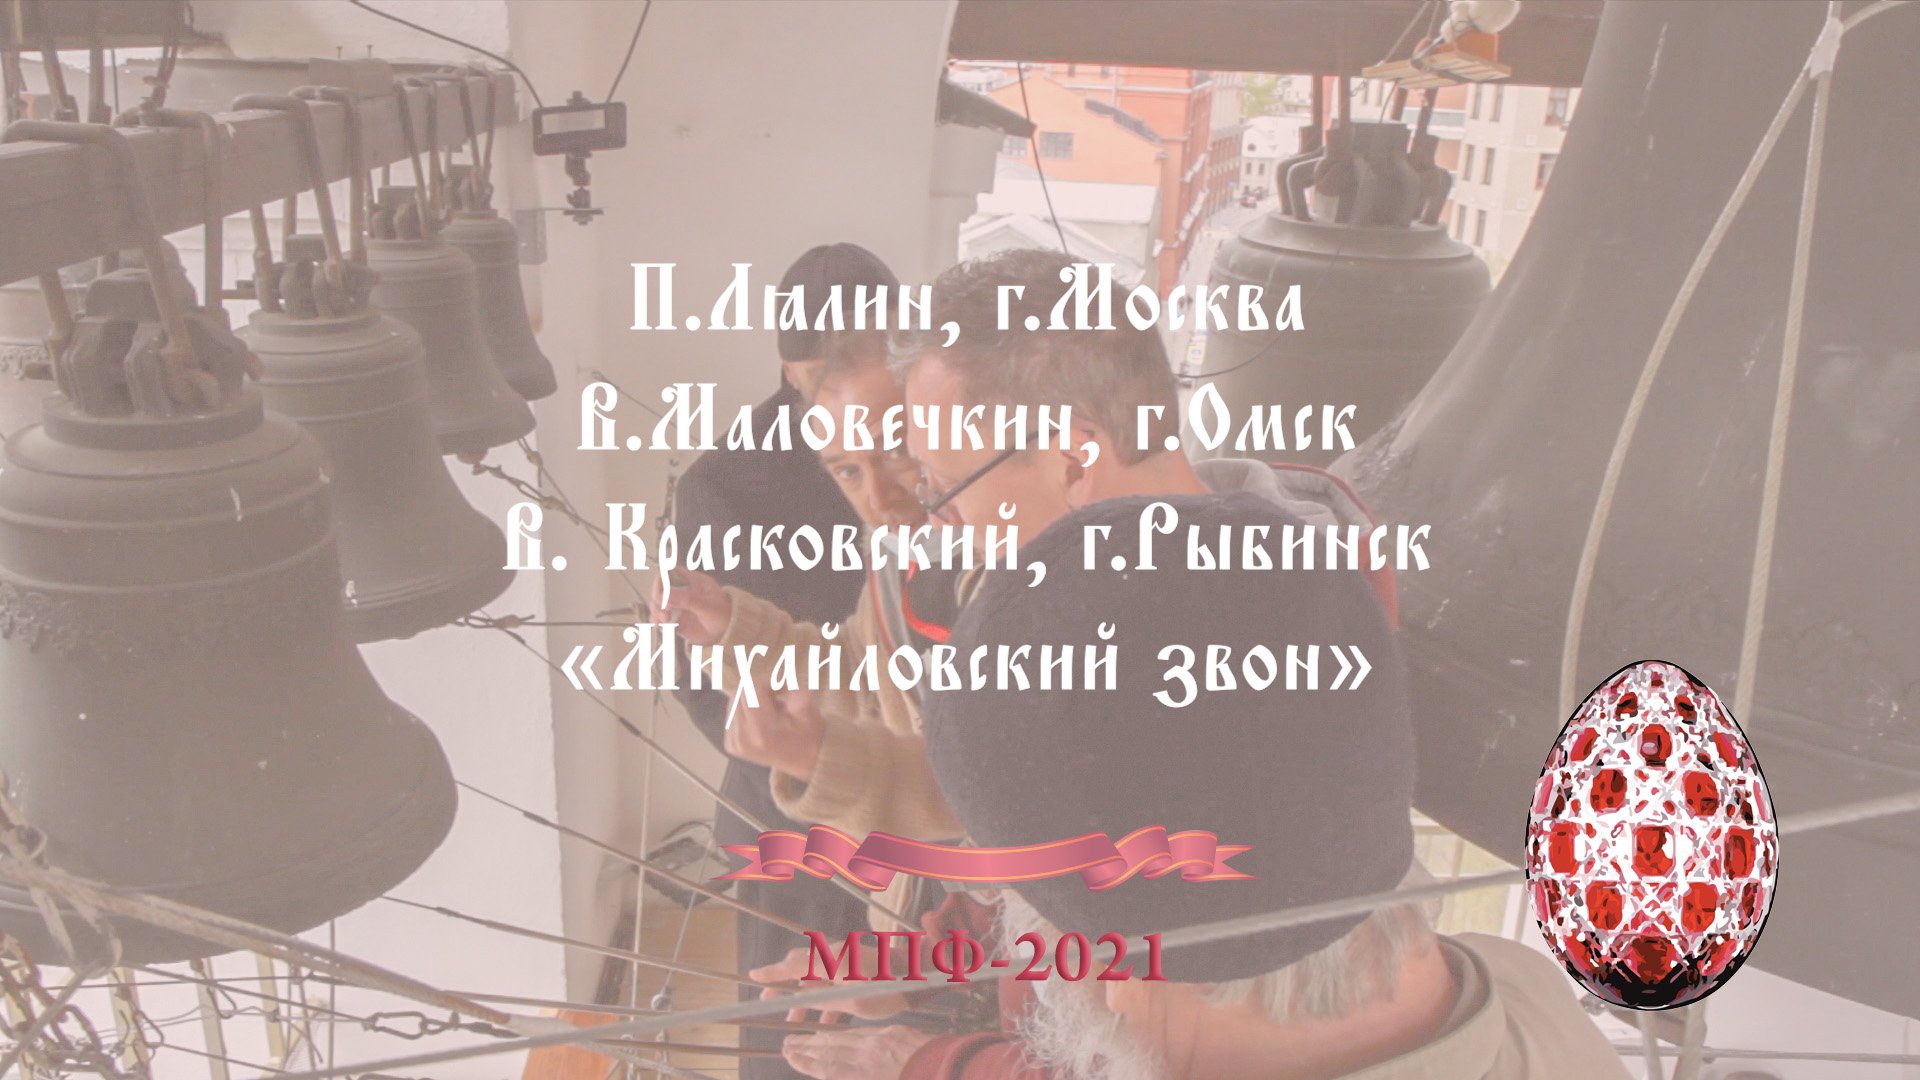 «Михайловский звон», фрагмент, звонари П.Лялин, В.Маловечкин, В. Красковский, МПФ-2021